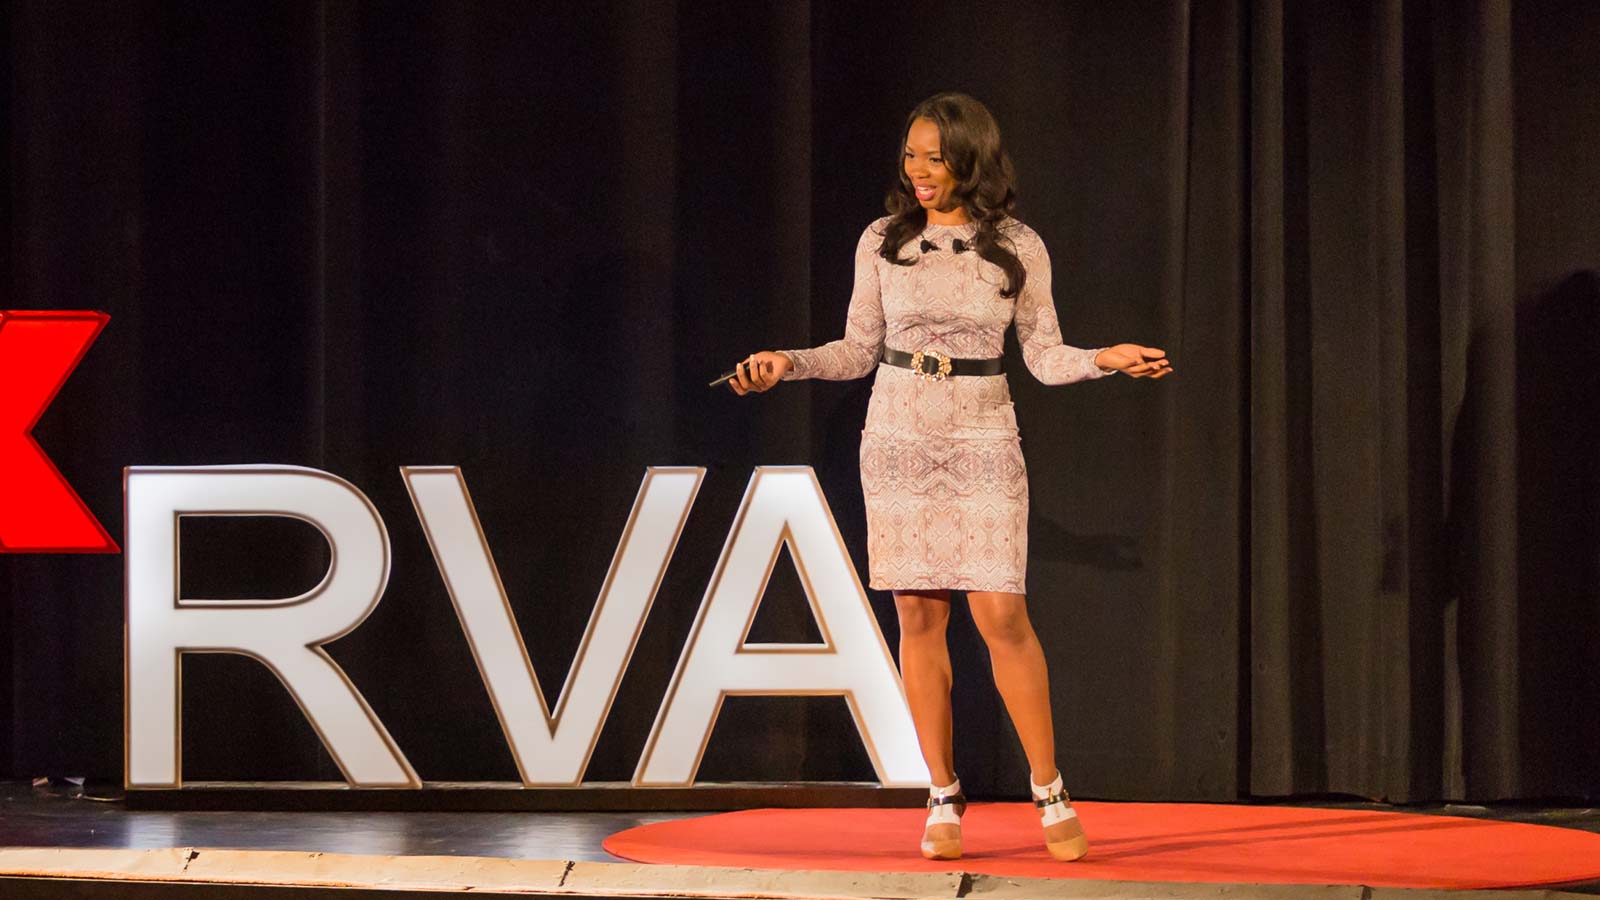 Keisha Howard at TEDx